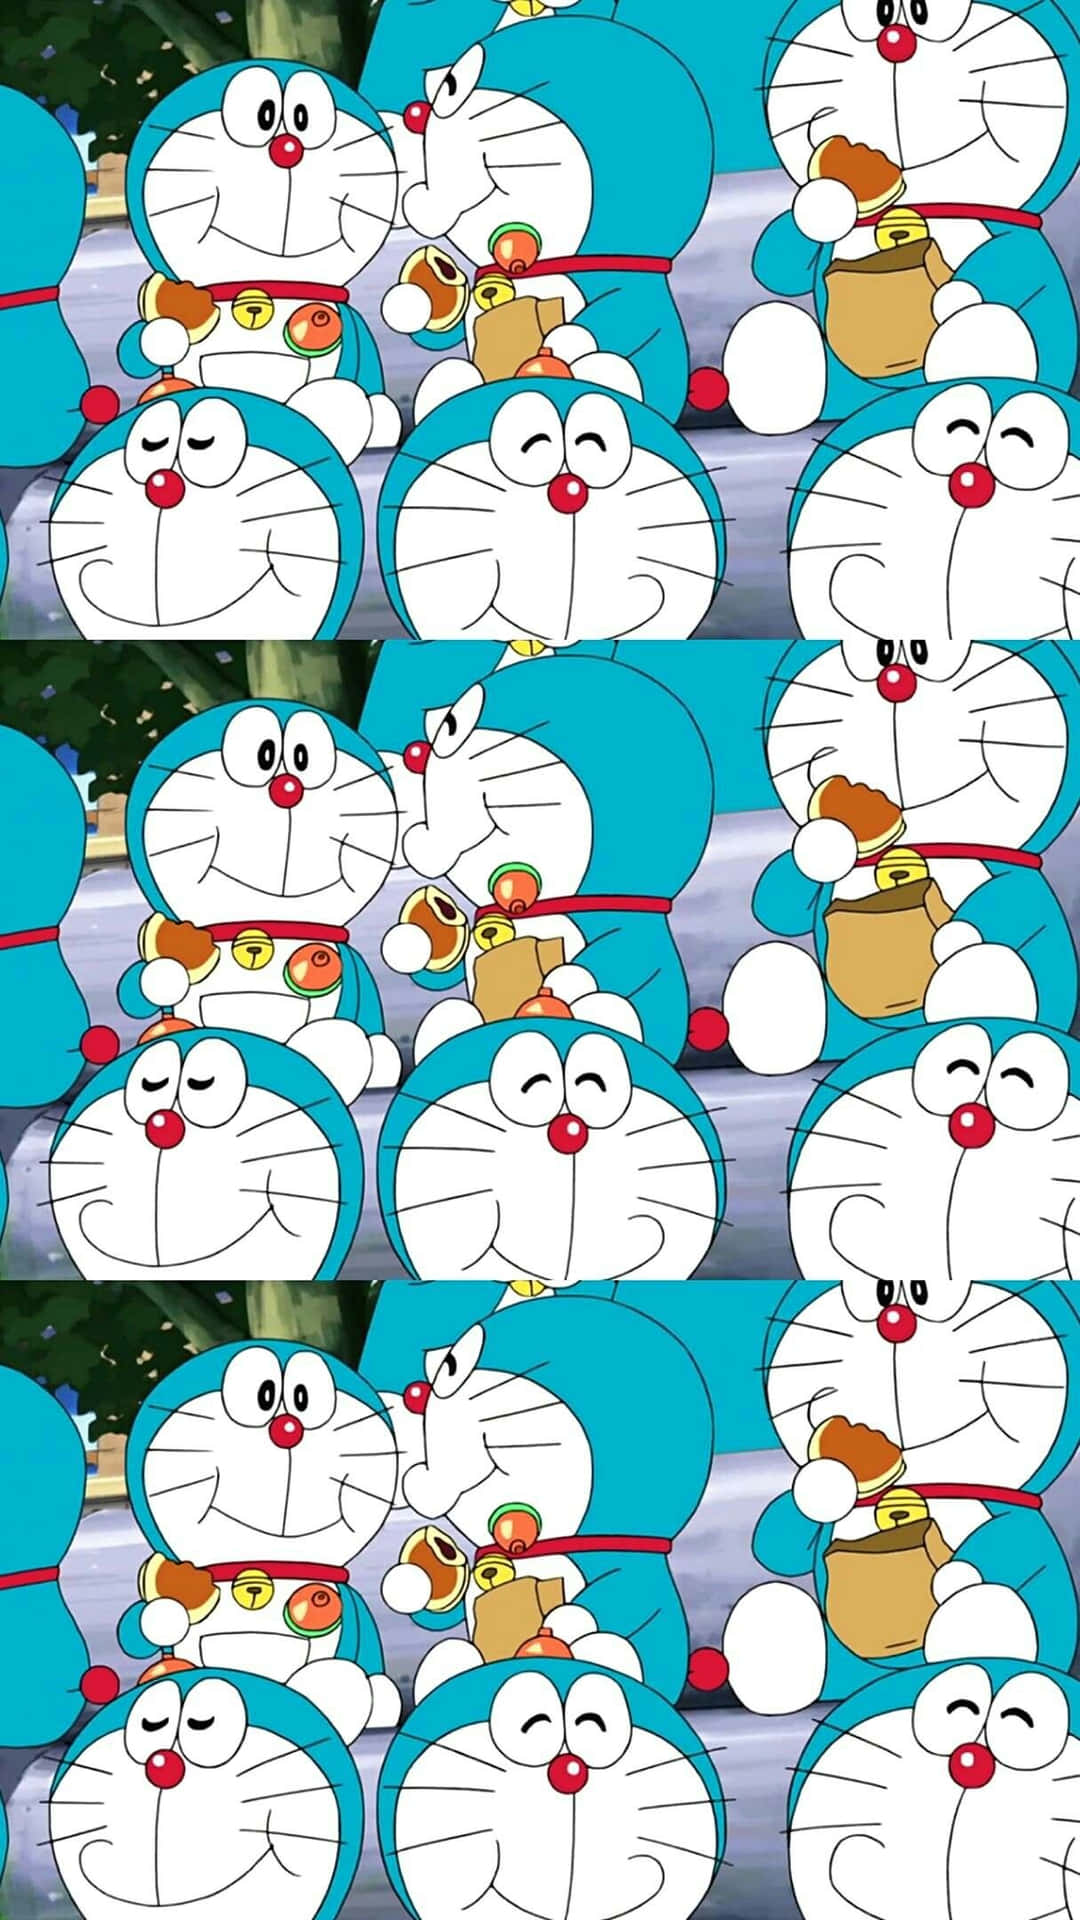 Doraemonerbjuder Dig Stöd.